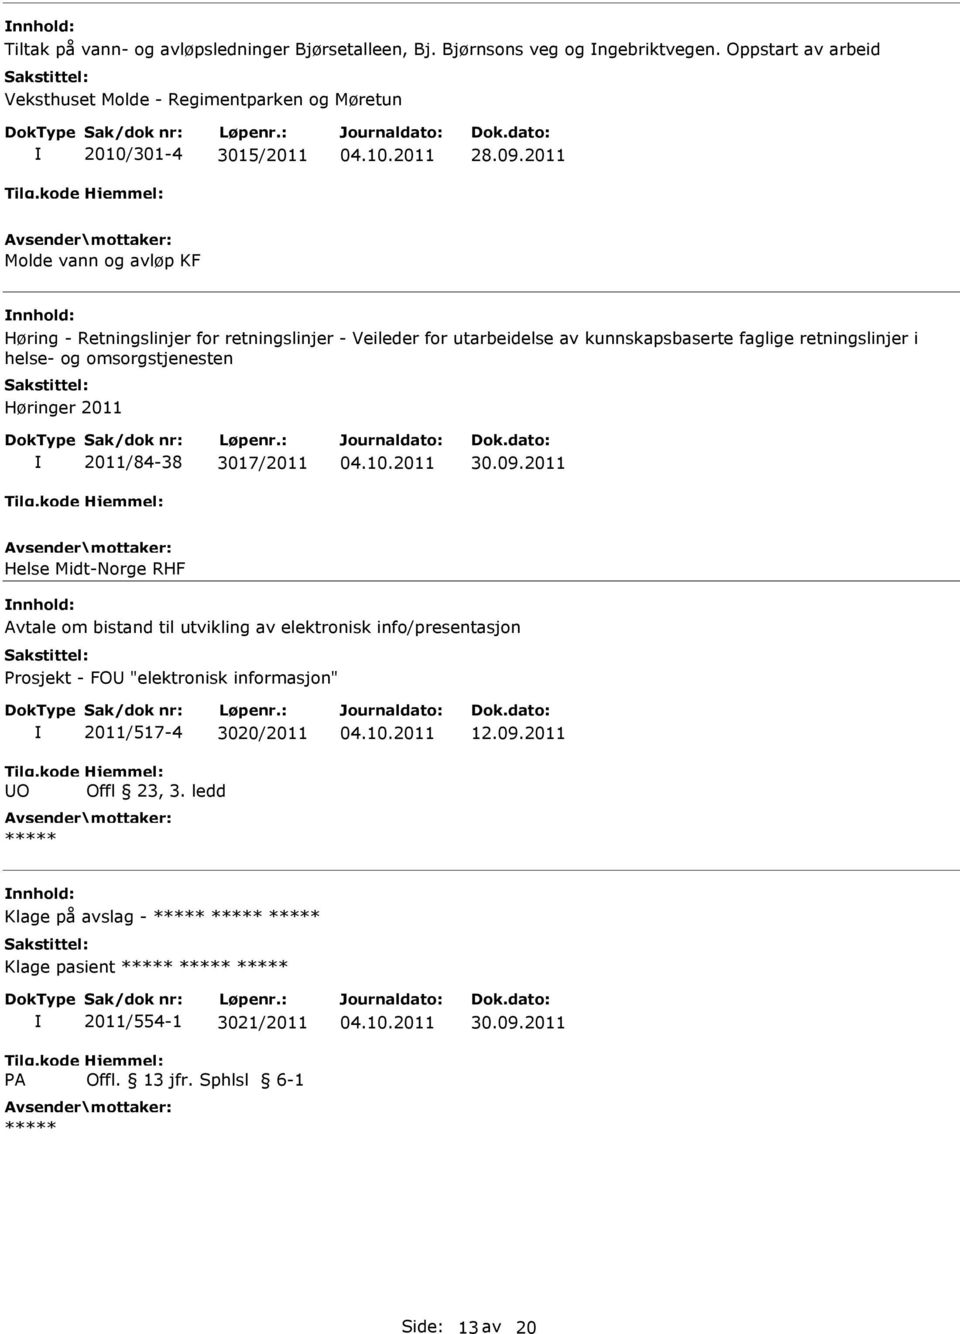 2011 Molde vann og avløp KF Høring - Retningslinjer for retningslinjer - Veileder for utarbeidelse av kunnskapsbaserte faglige retningslinjer i helse- og